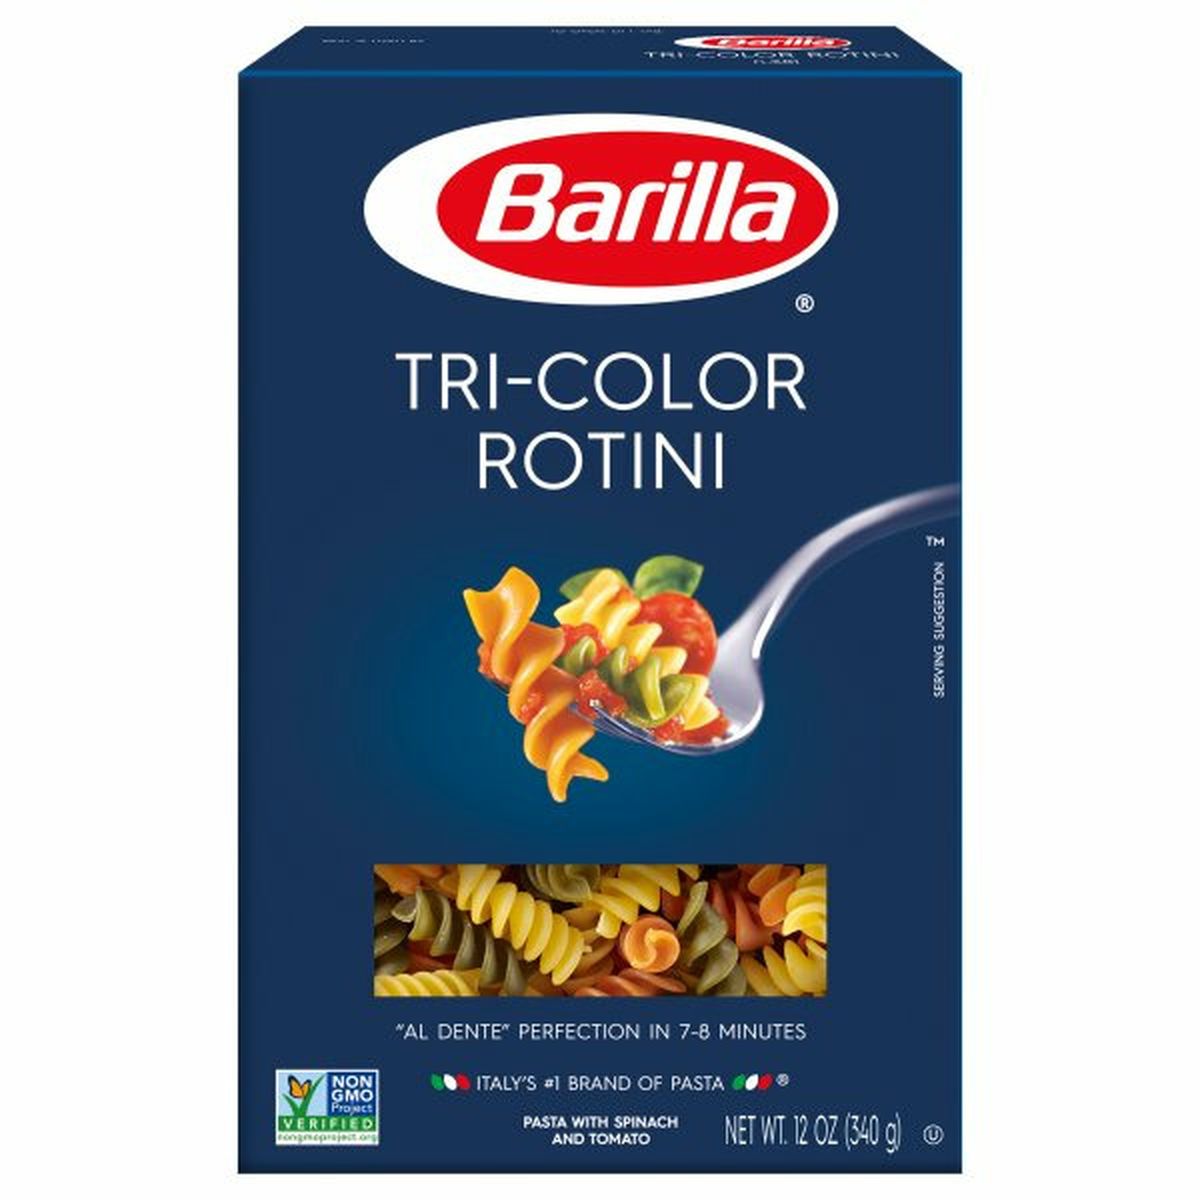 Calories in Barillas Rotini, Tri-Color